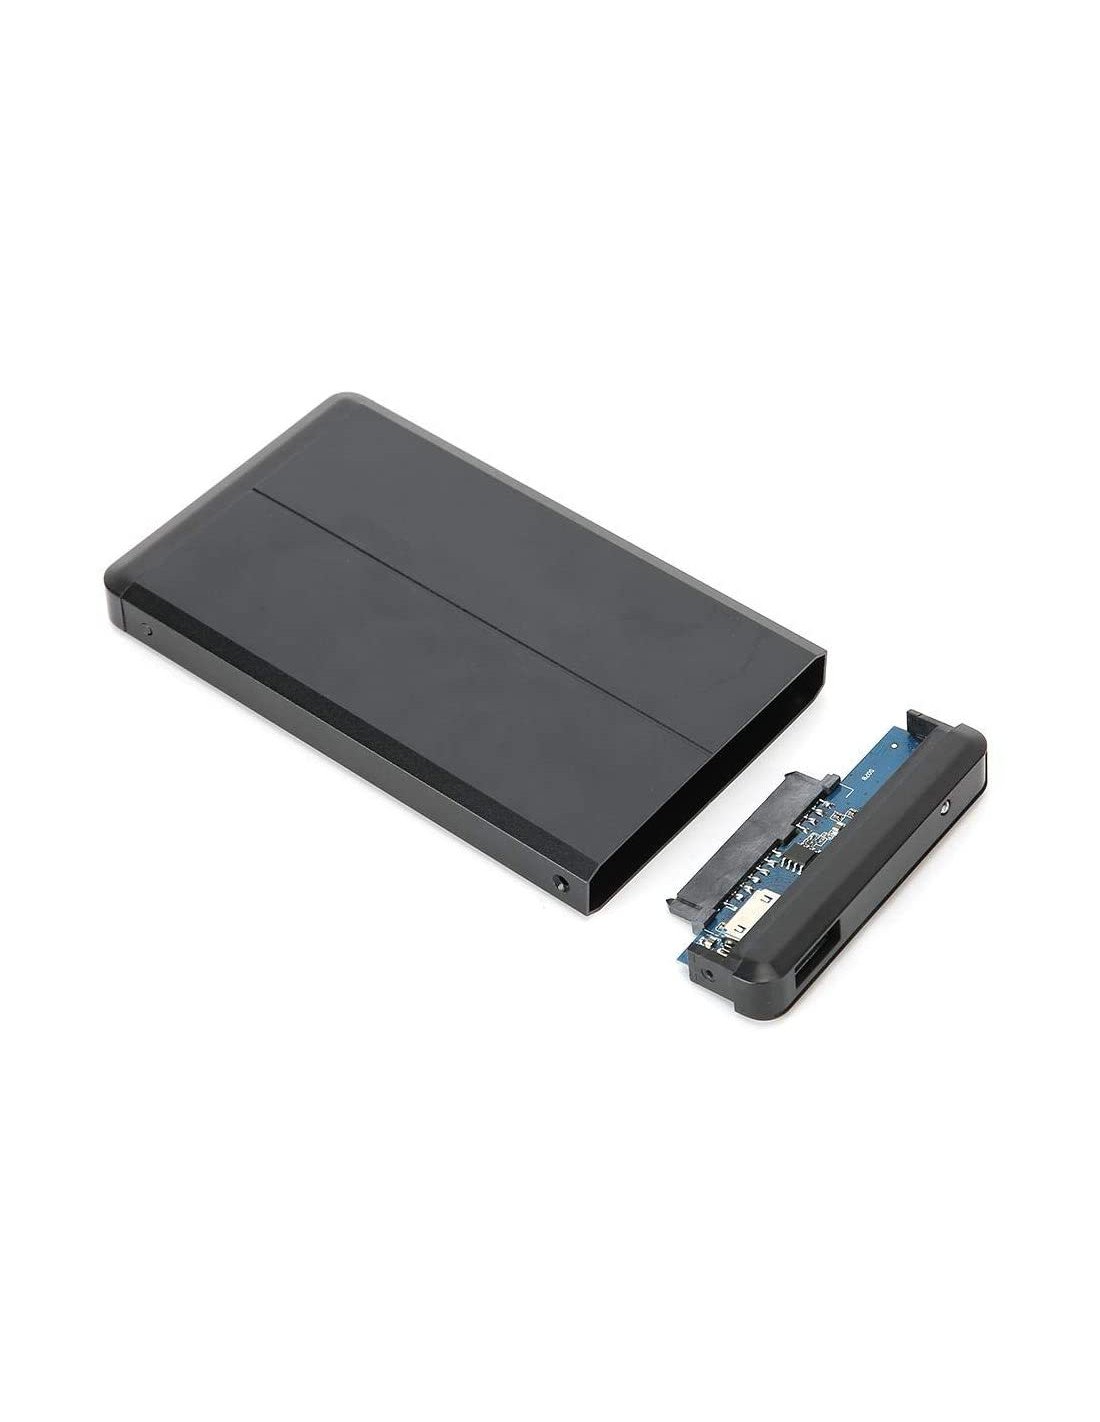 Boitier Pour Disque Dur Externe 2.5'' HDD USB 2.0 - Noir